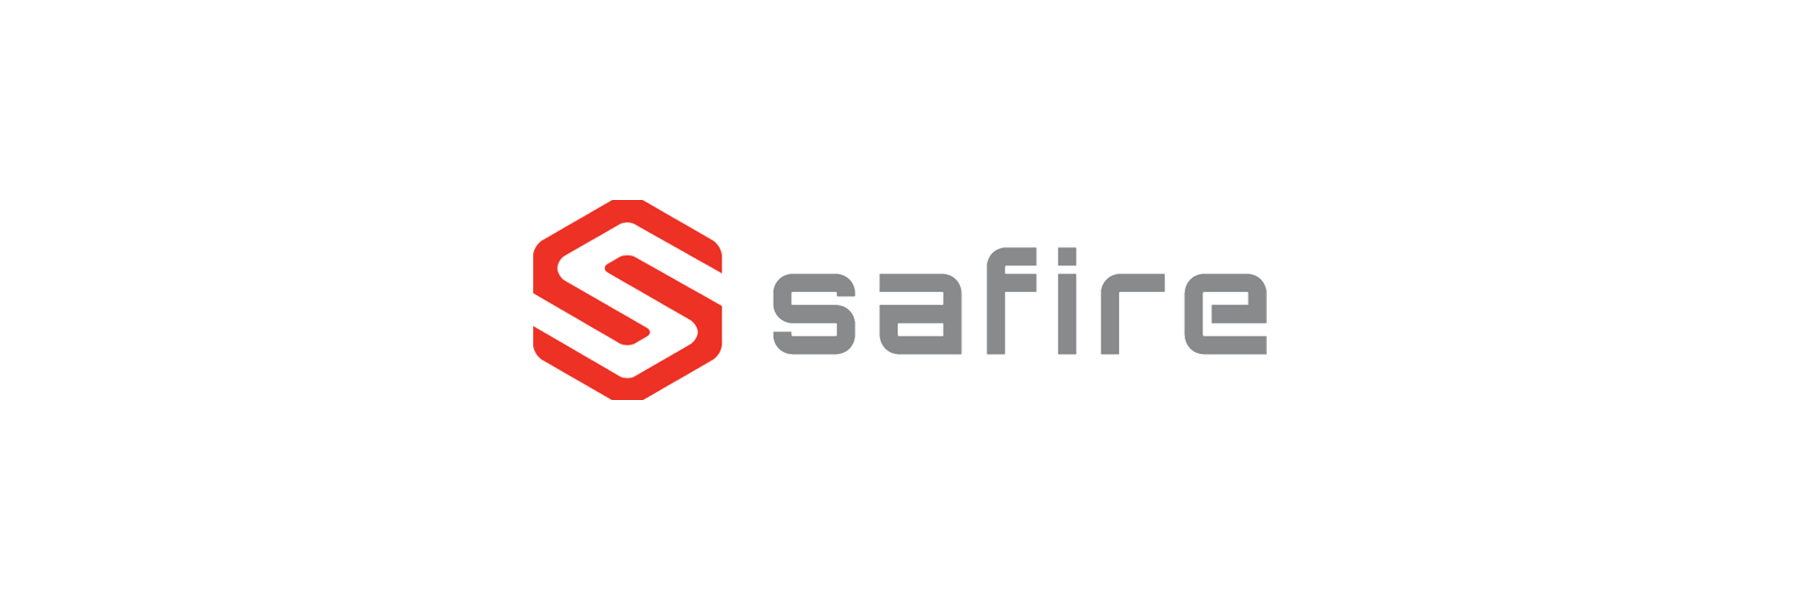 Safire bietet eine breite Palette von Produkten...